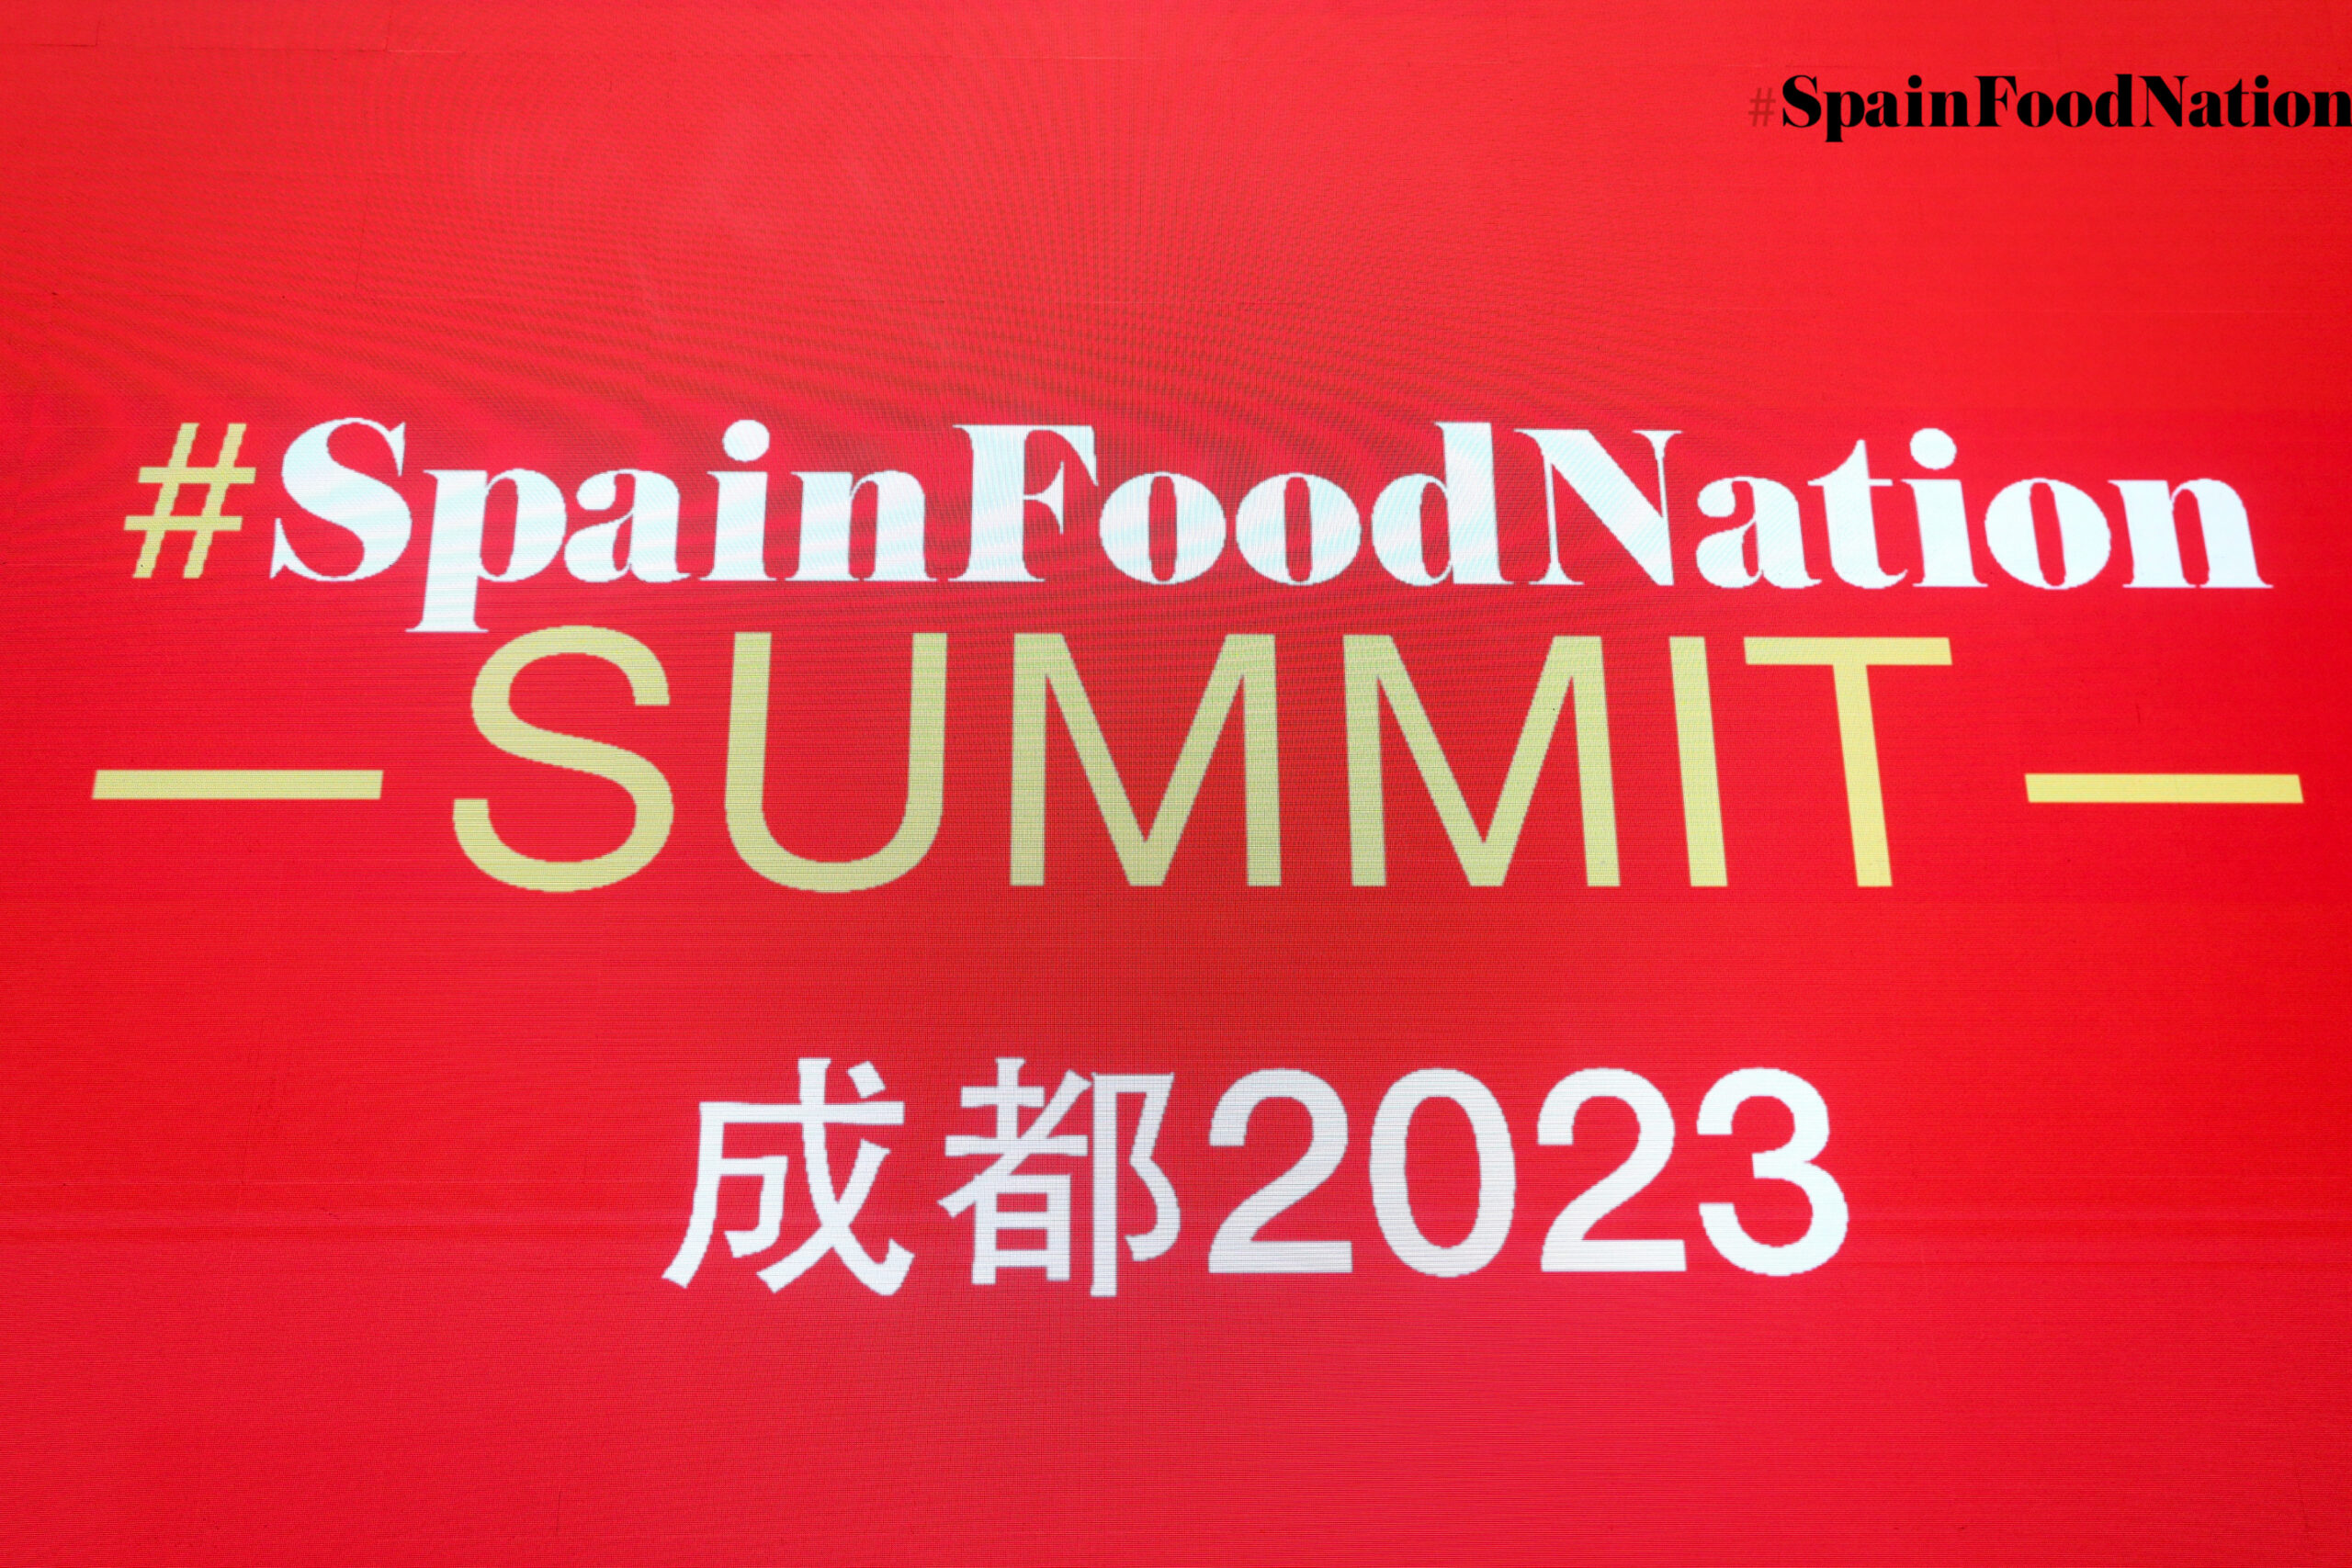 Los Jamones Ibéricos de España presentes en el  SUMMIT Spain Food Nation de Chengdu